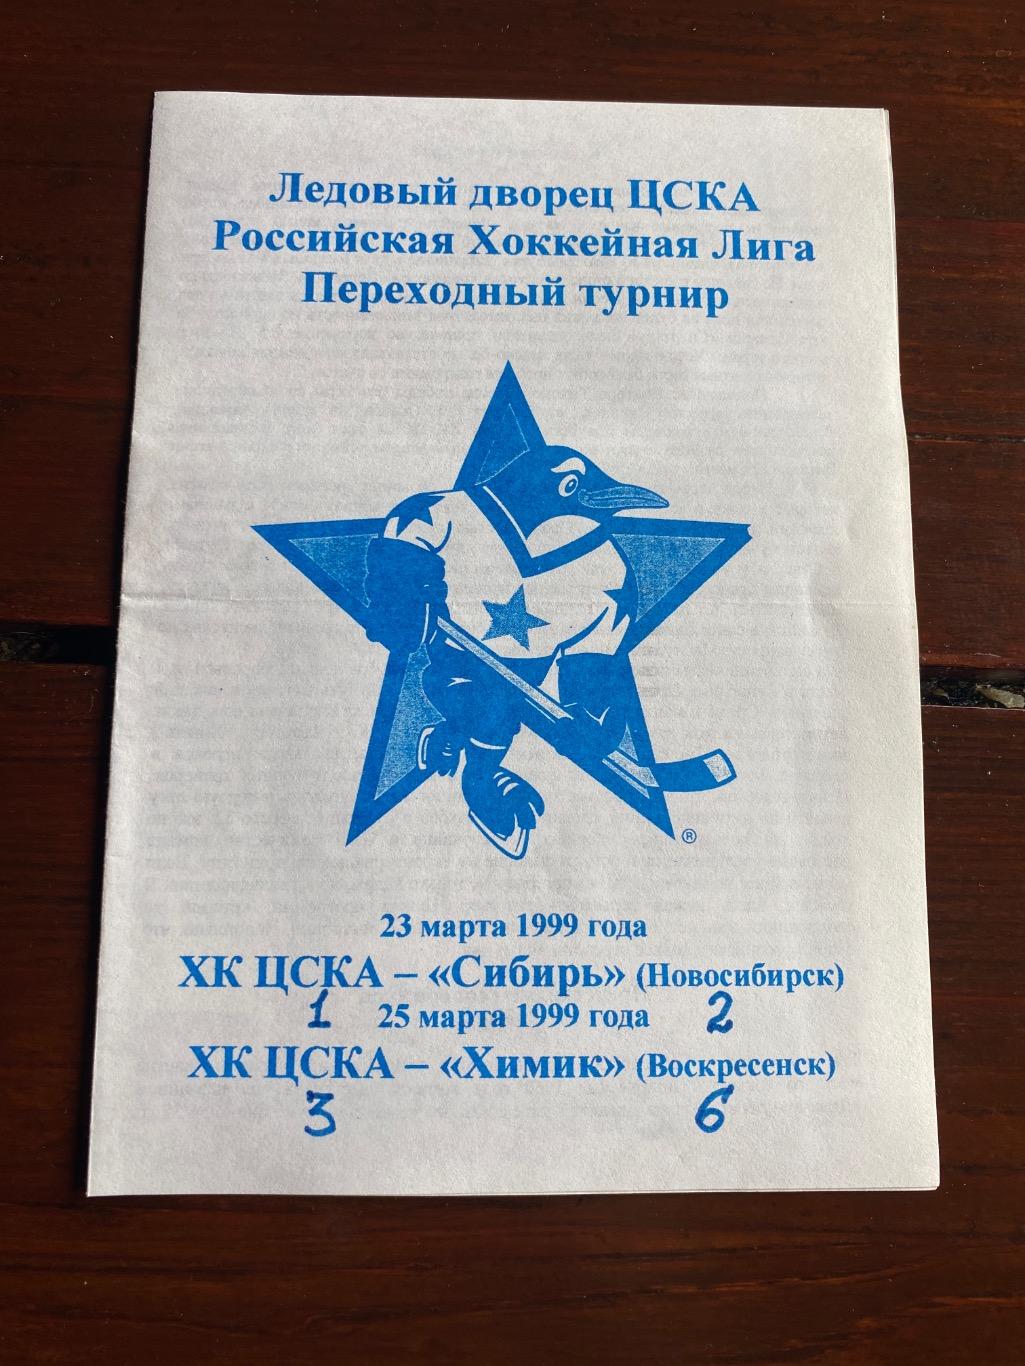 Программа ХК ЦСКА - Сибирь / Химик 1999